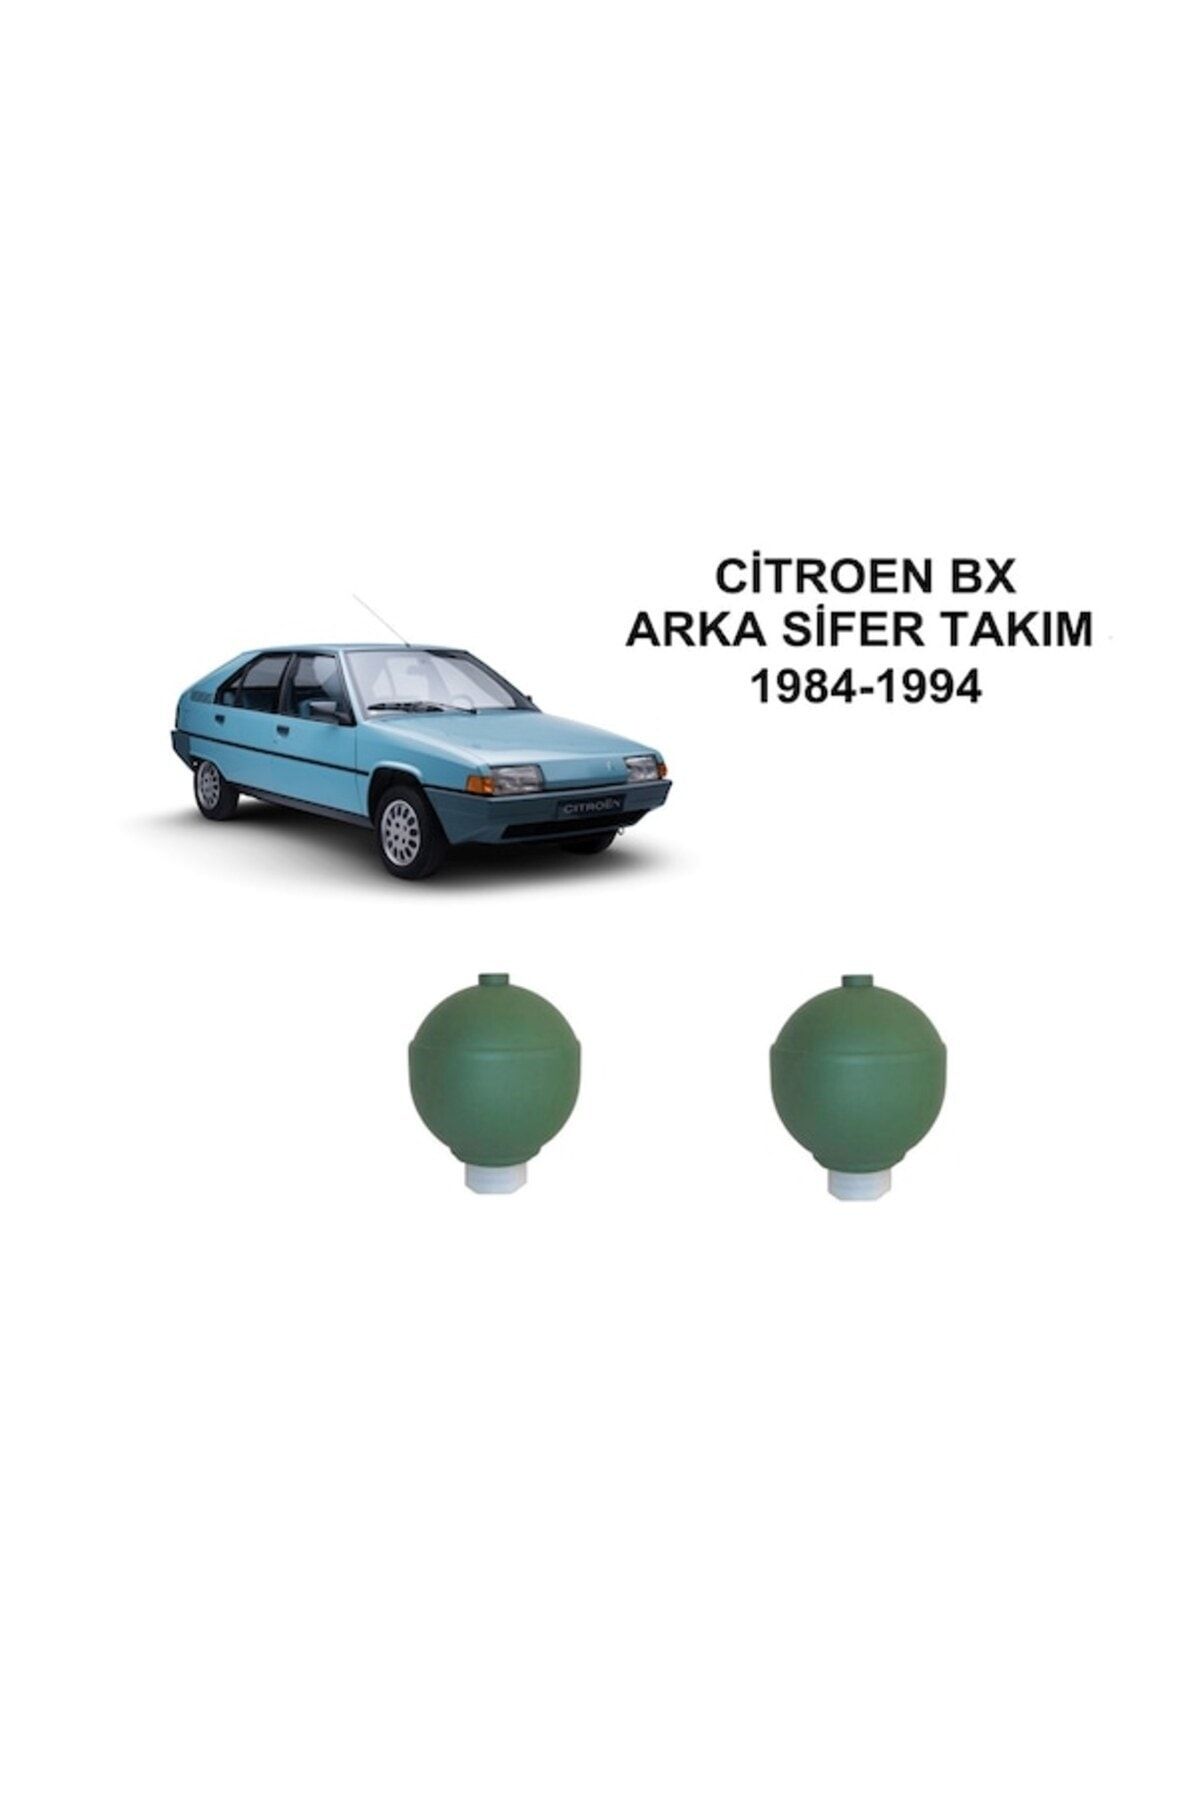 arotomarket Citroen Bx Arka Sifer Takim 40 Bar 1984-1994 95564974 476171955